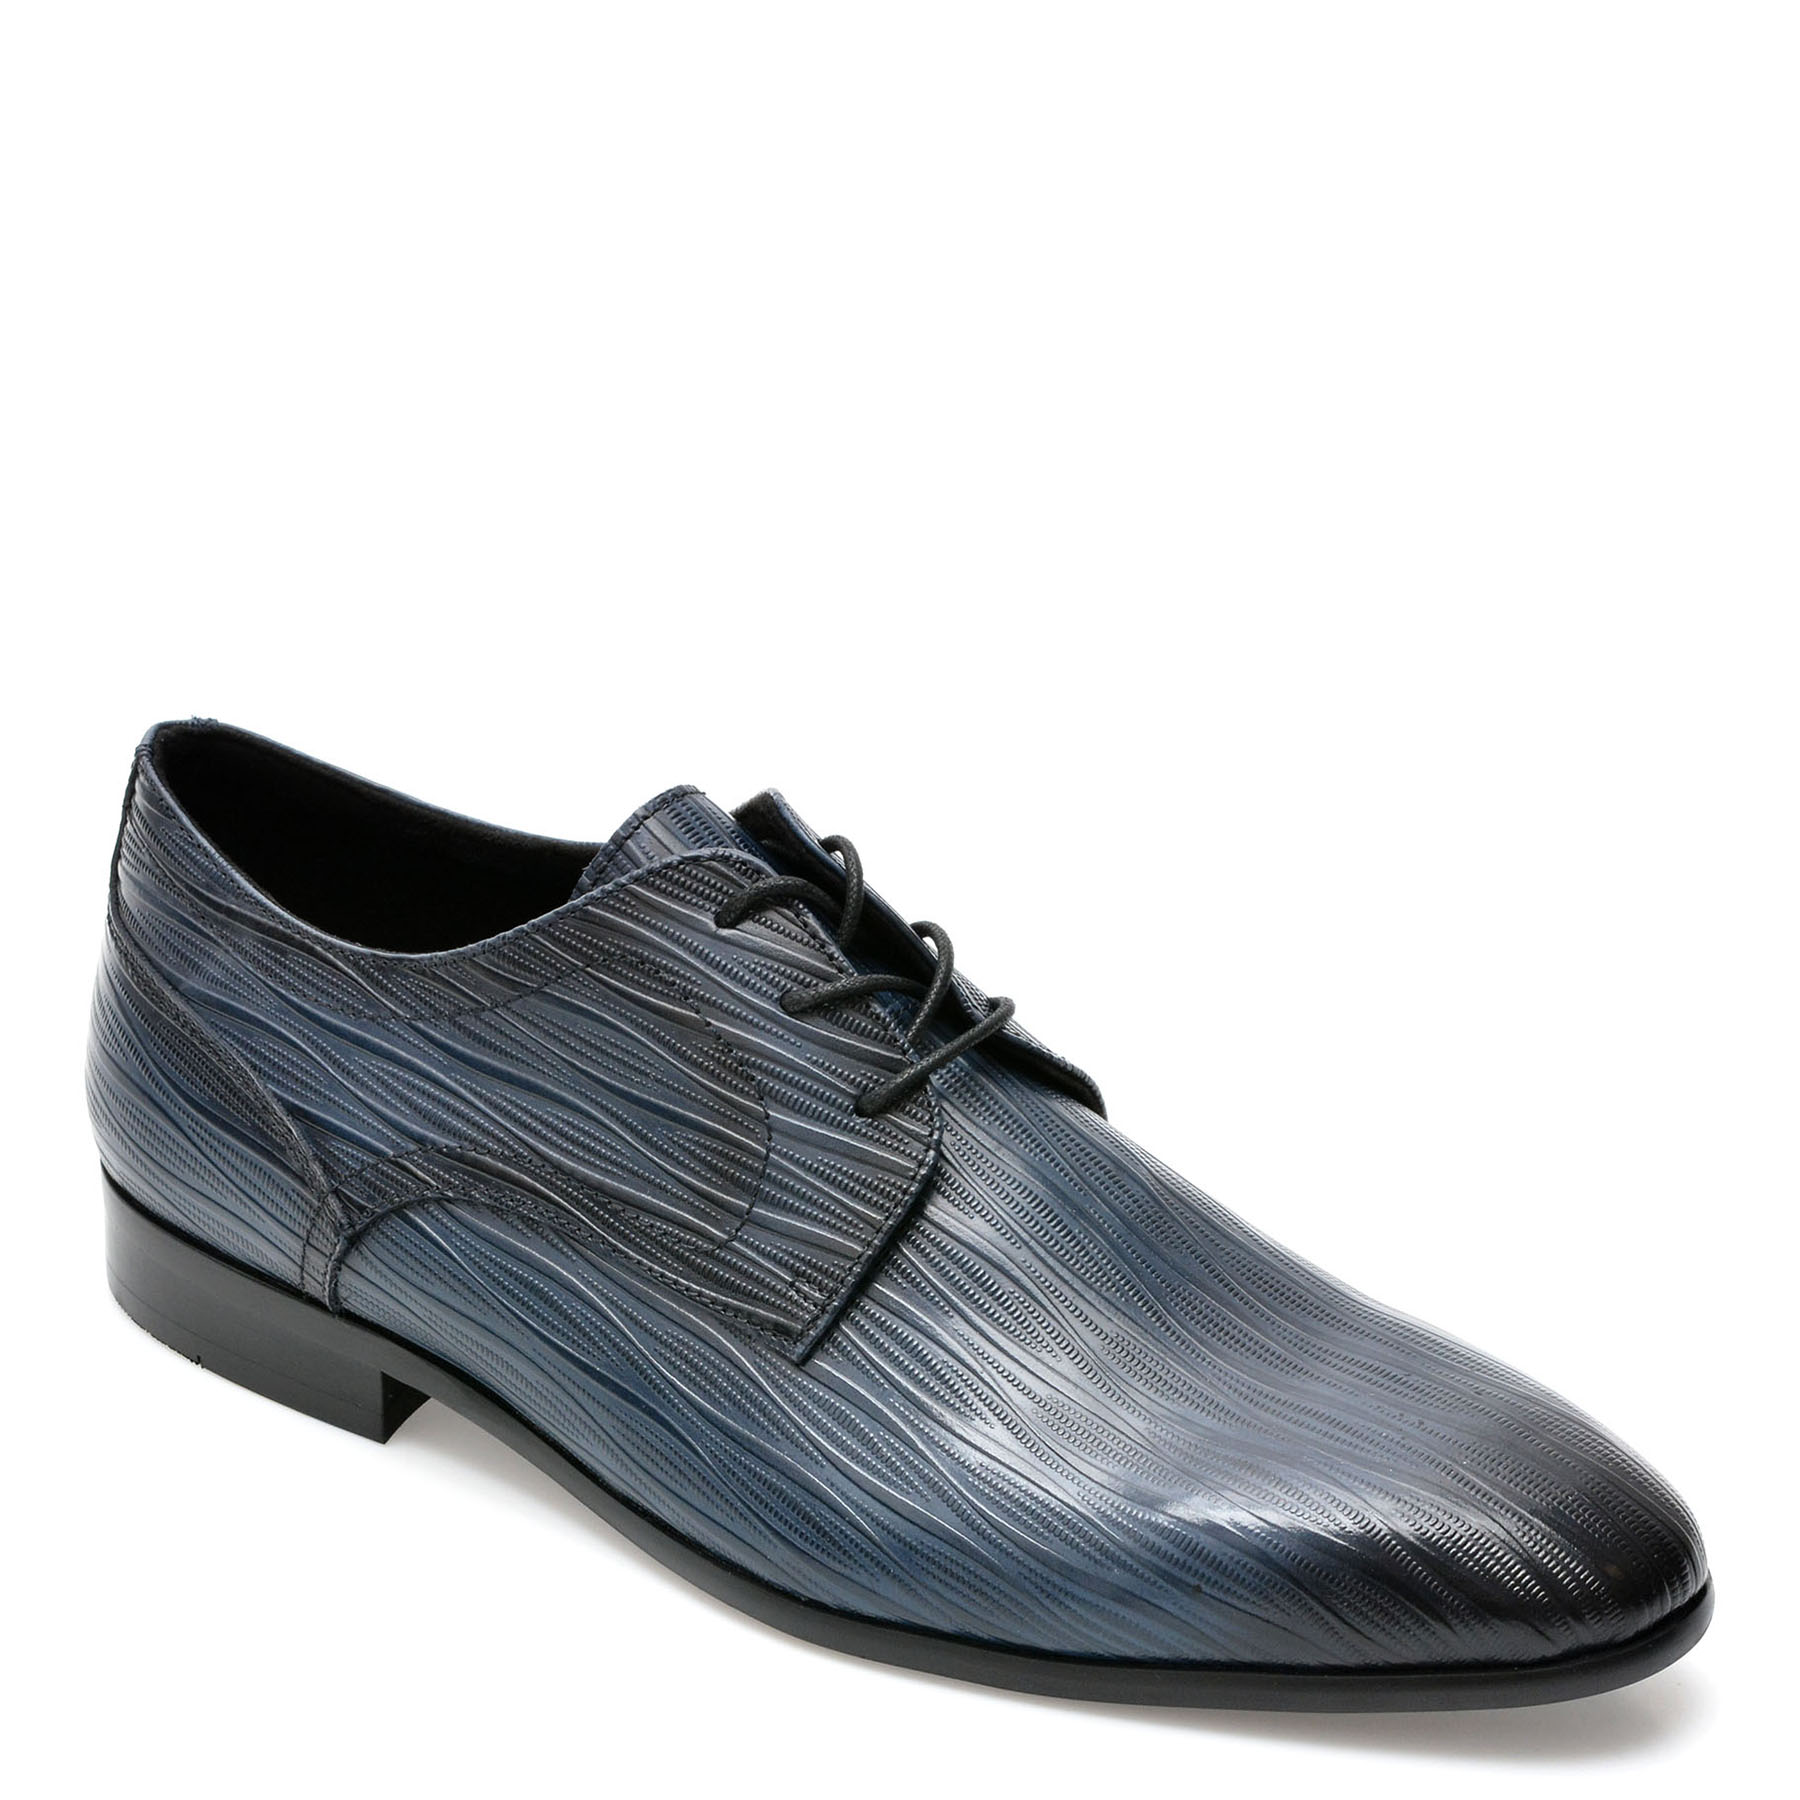 Pantofi ALDO bleumarin, DELFORDFLEX410, din piele naturala